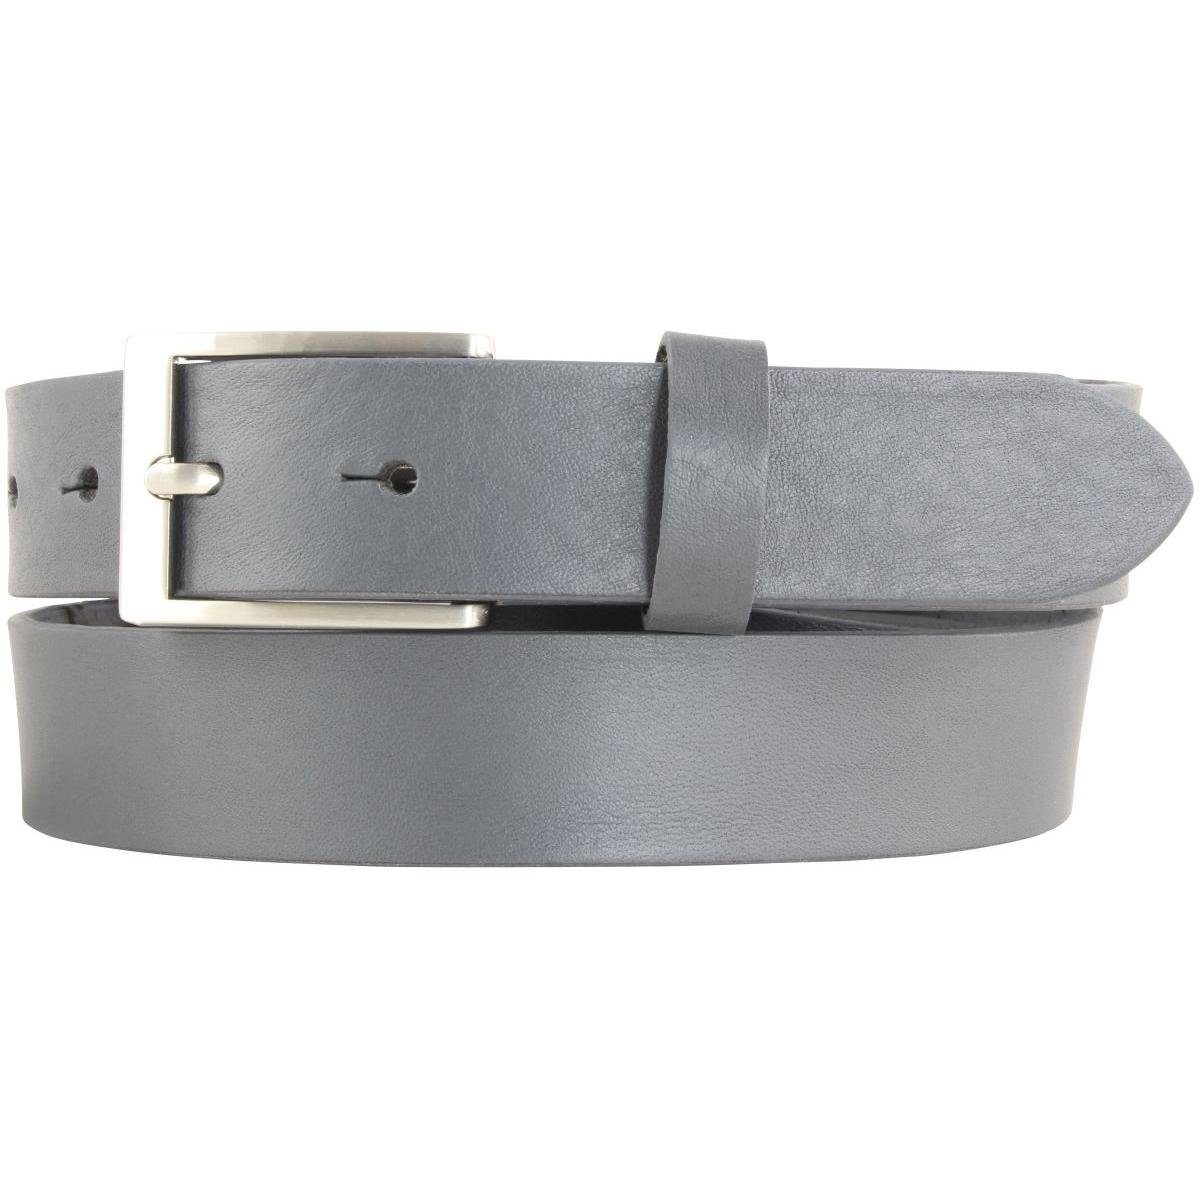 BELTINGER Ledergürtel Kinder-Gürtel aus Vollrindleder 3 cm - Leder-Gürtel für Jungen Mädchen Dunkelgrau, Silber